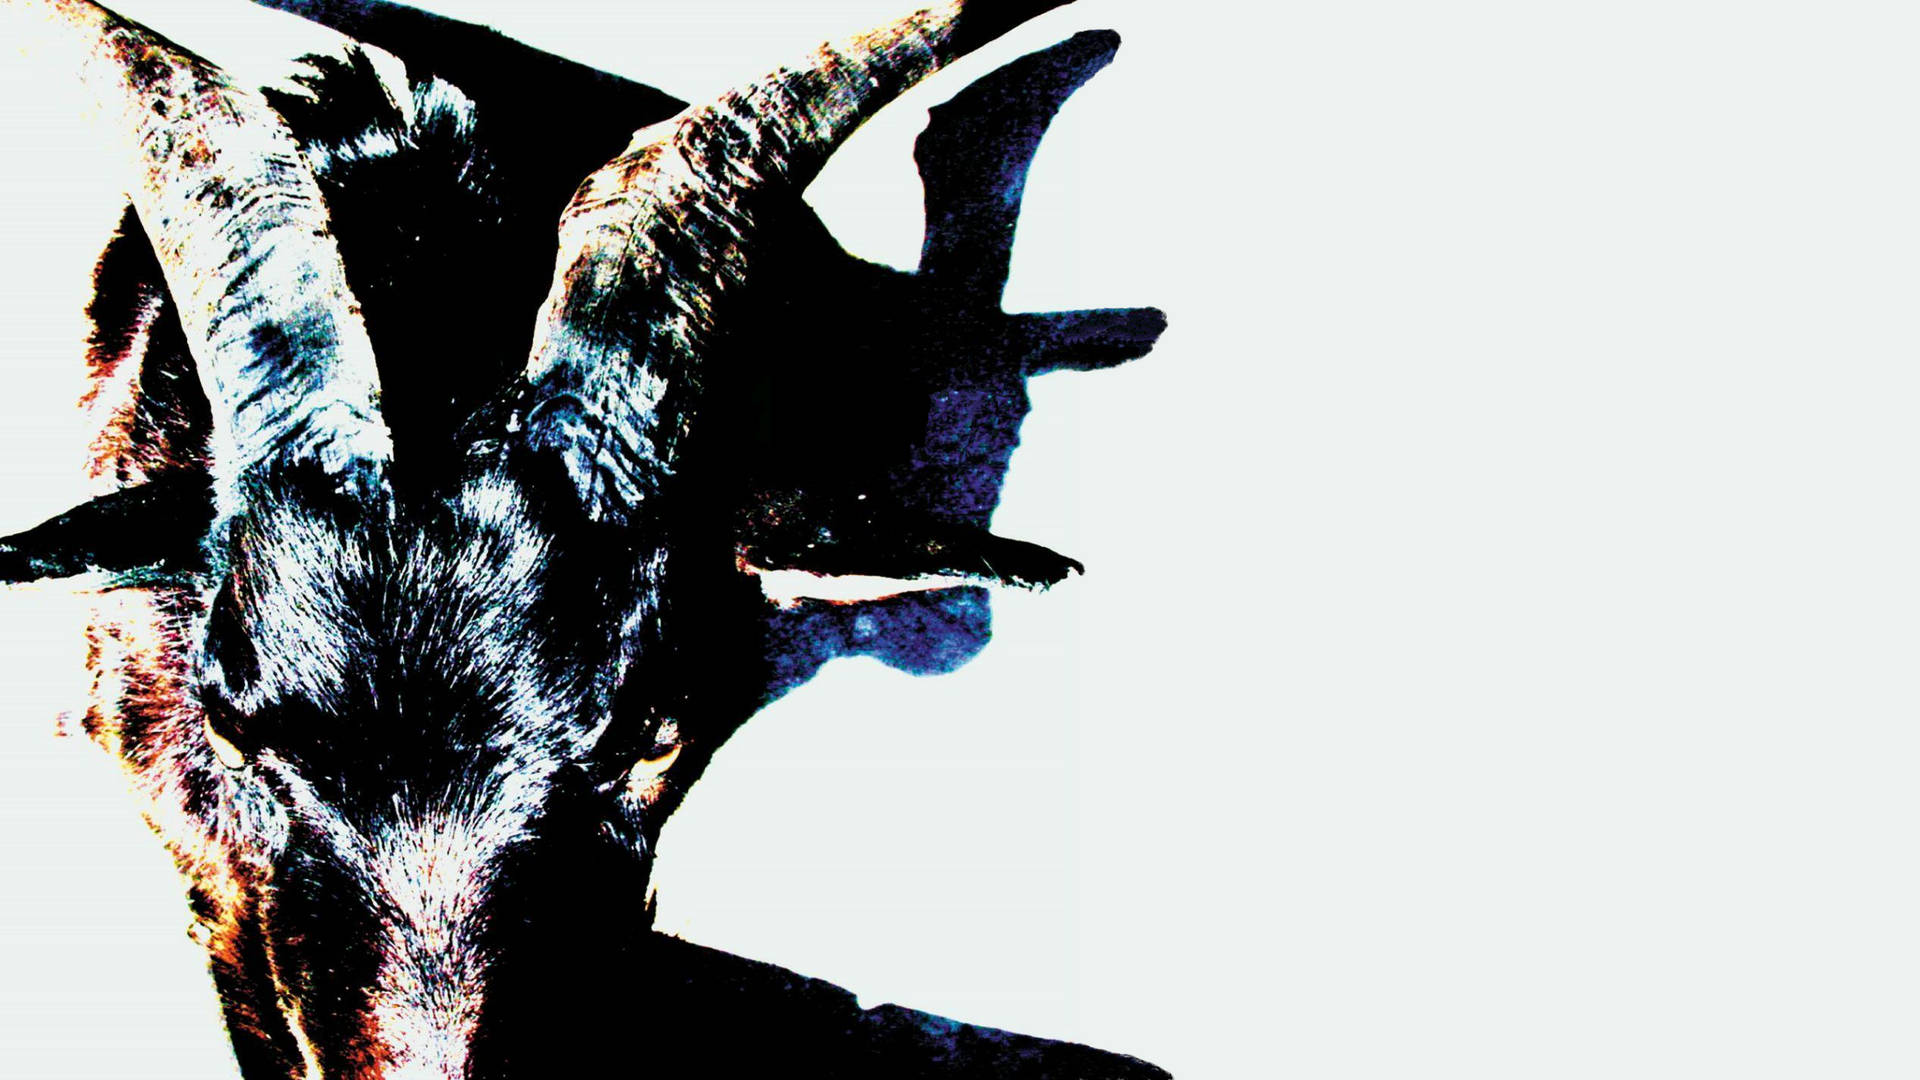 Slipknot Lowa Goat Album Cover Wallpaper